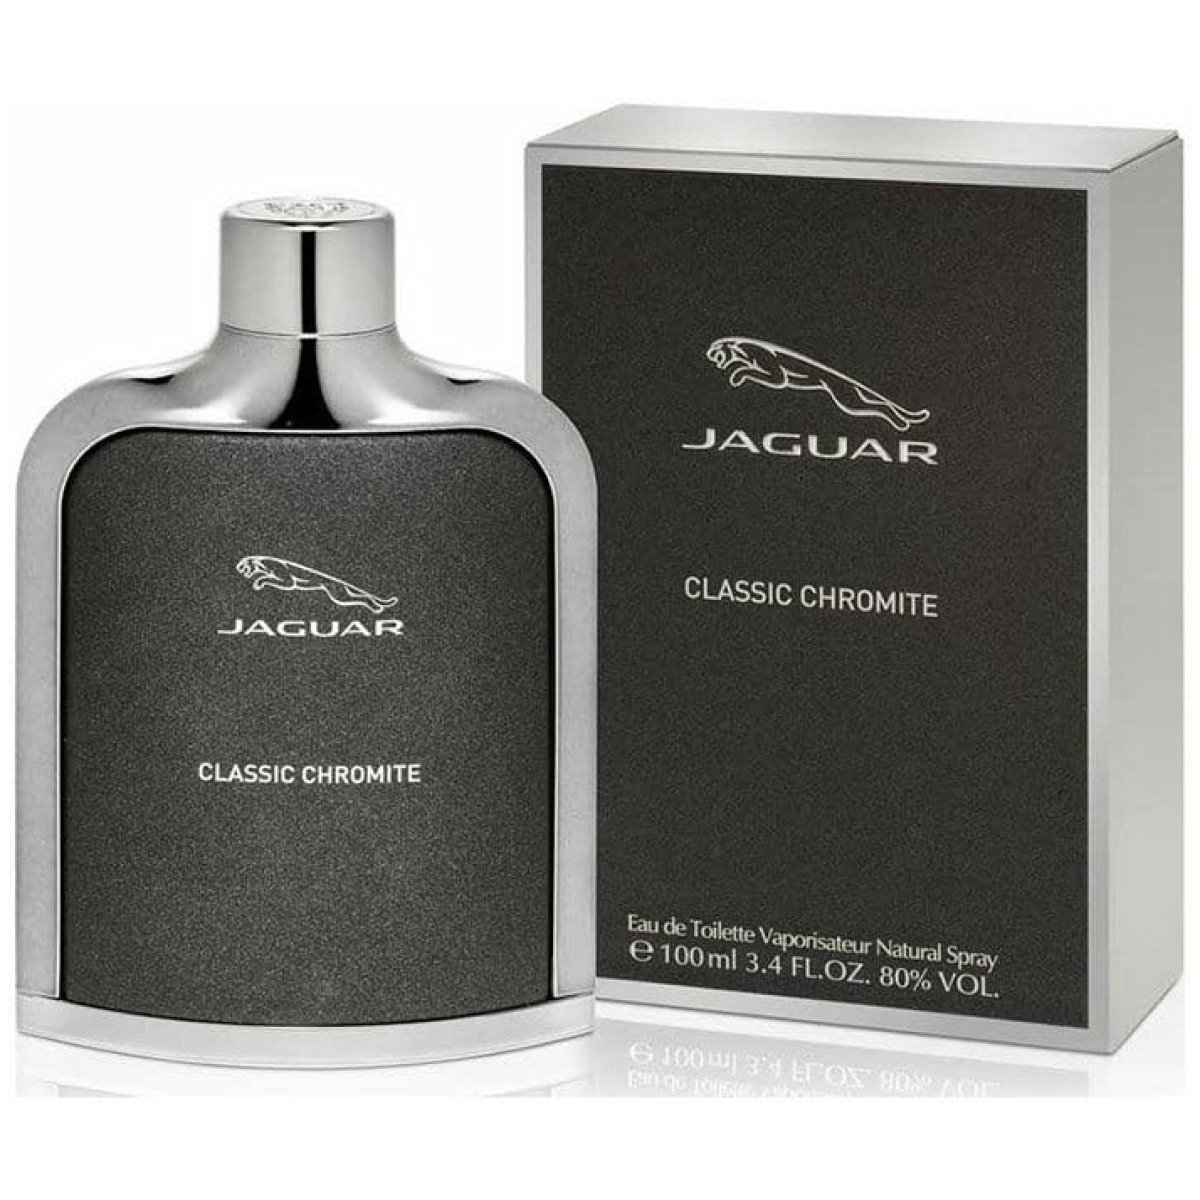 Jaguar Classic Chromite EDT Perfume For Men 100 ml